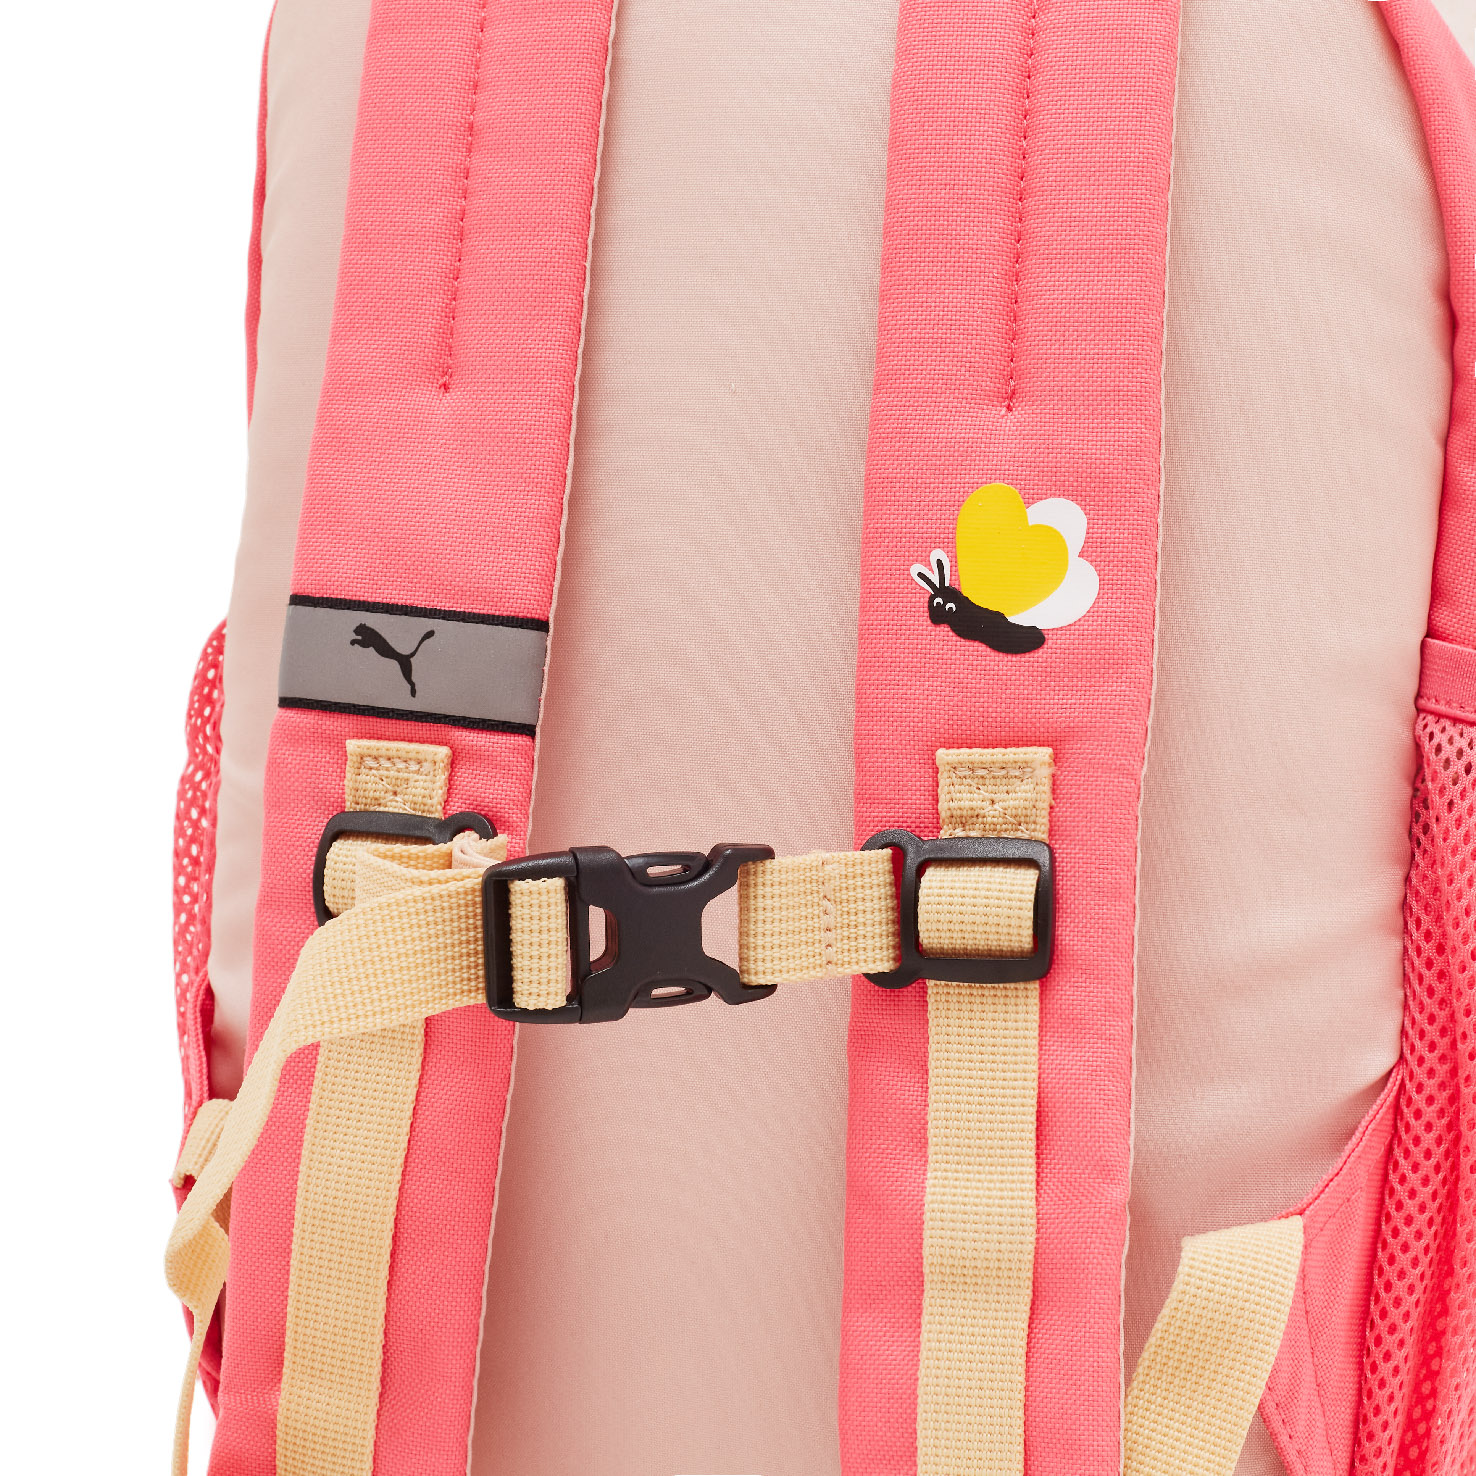 Small World Backpack PUMA, размер Один размер, цвет розовый PM079203 - фото 4